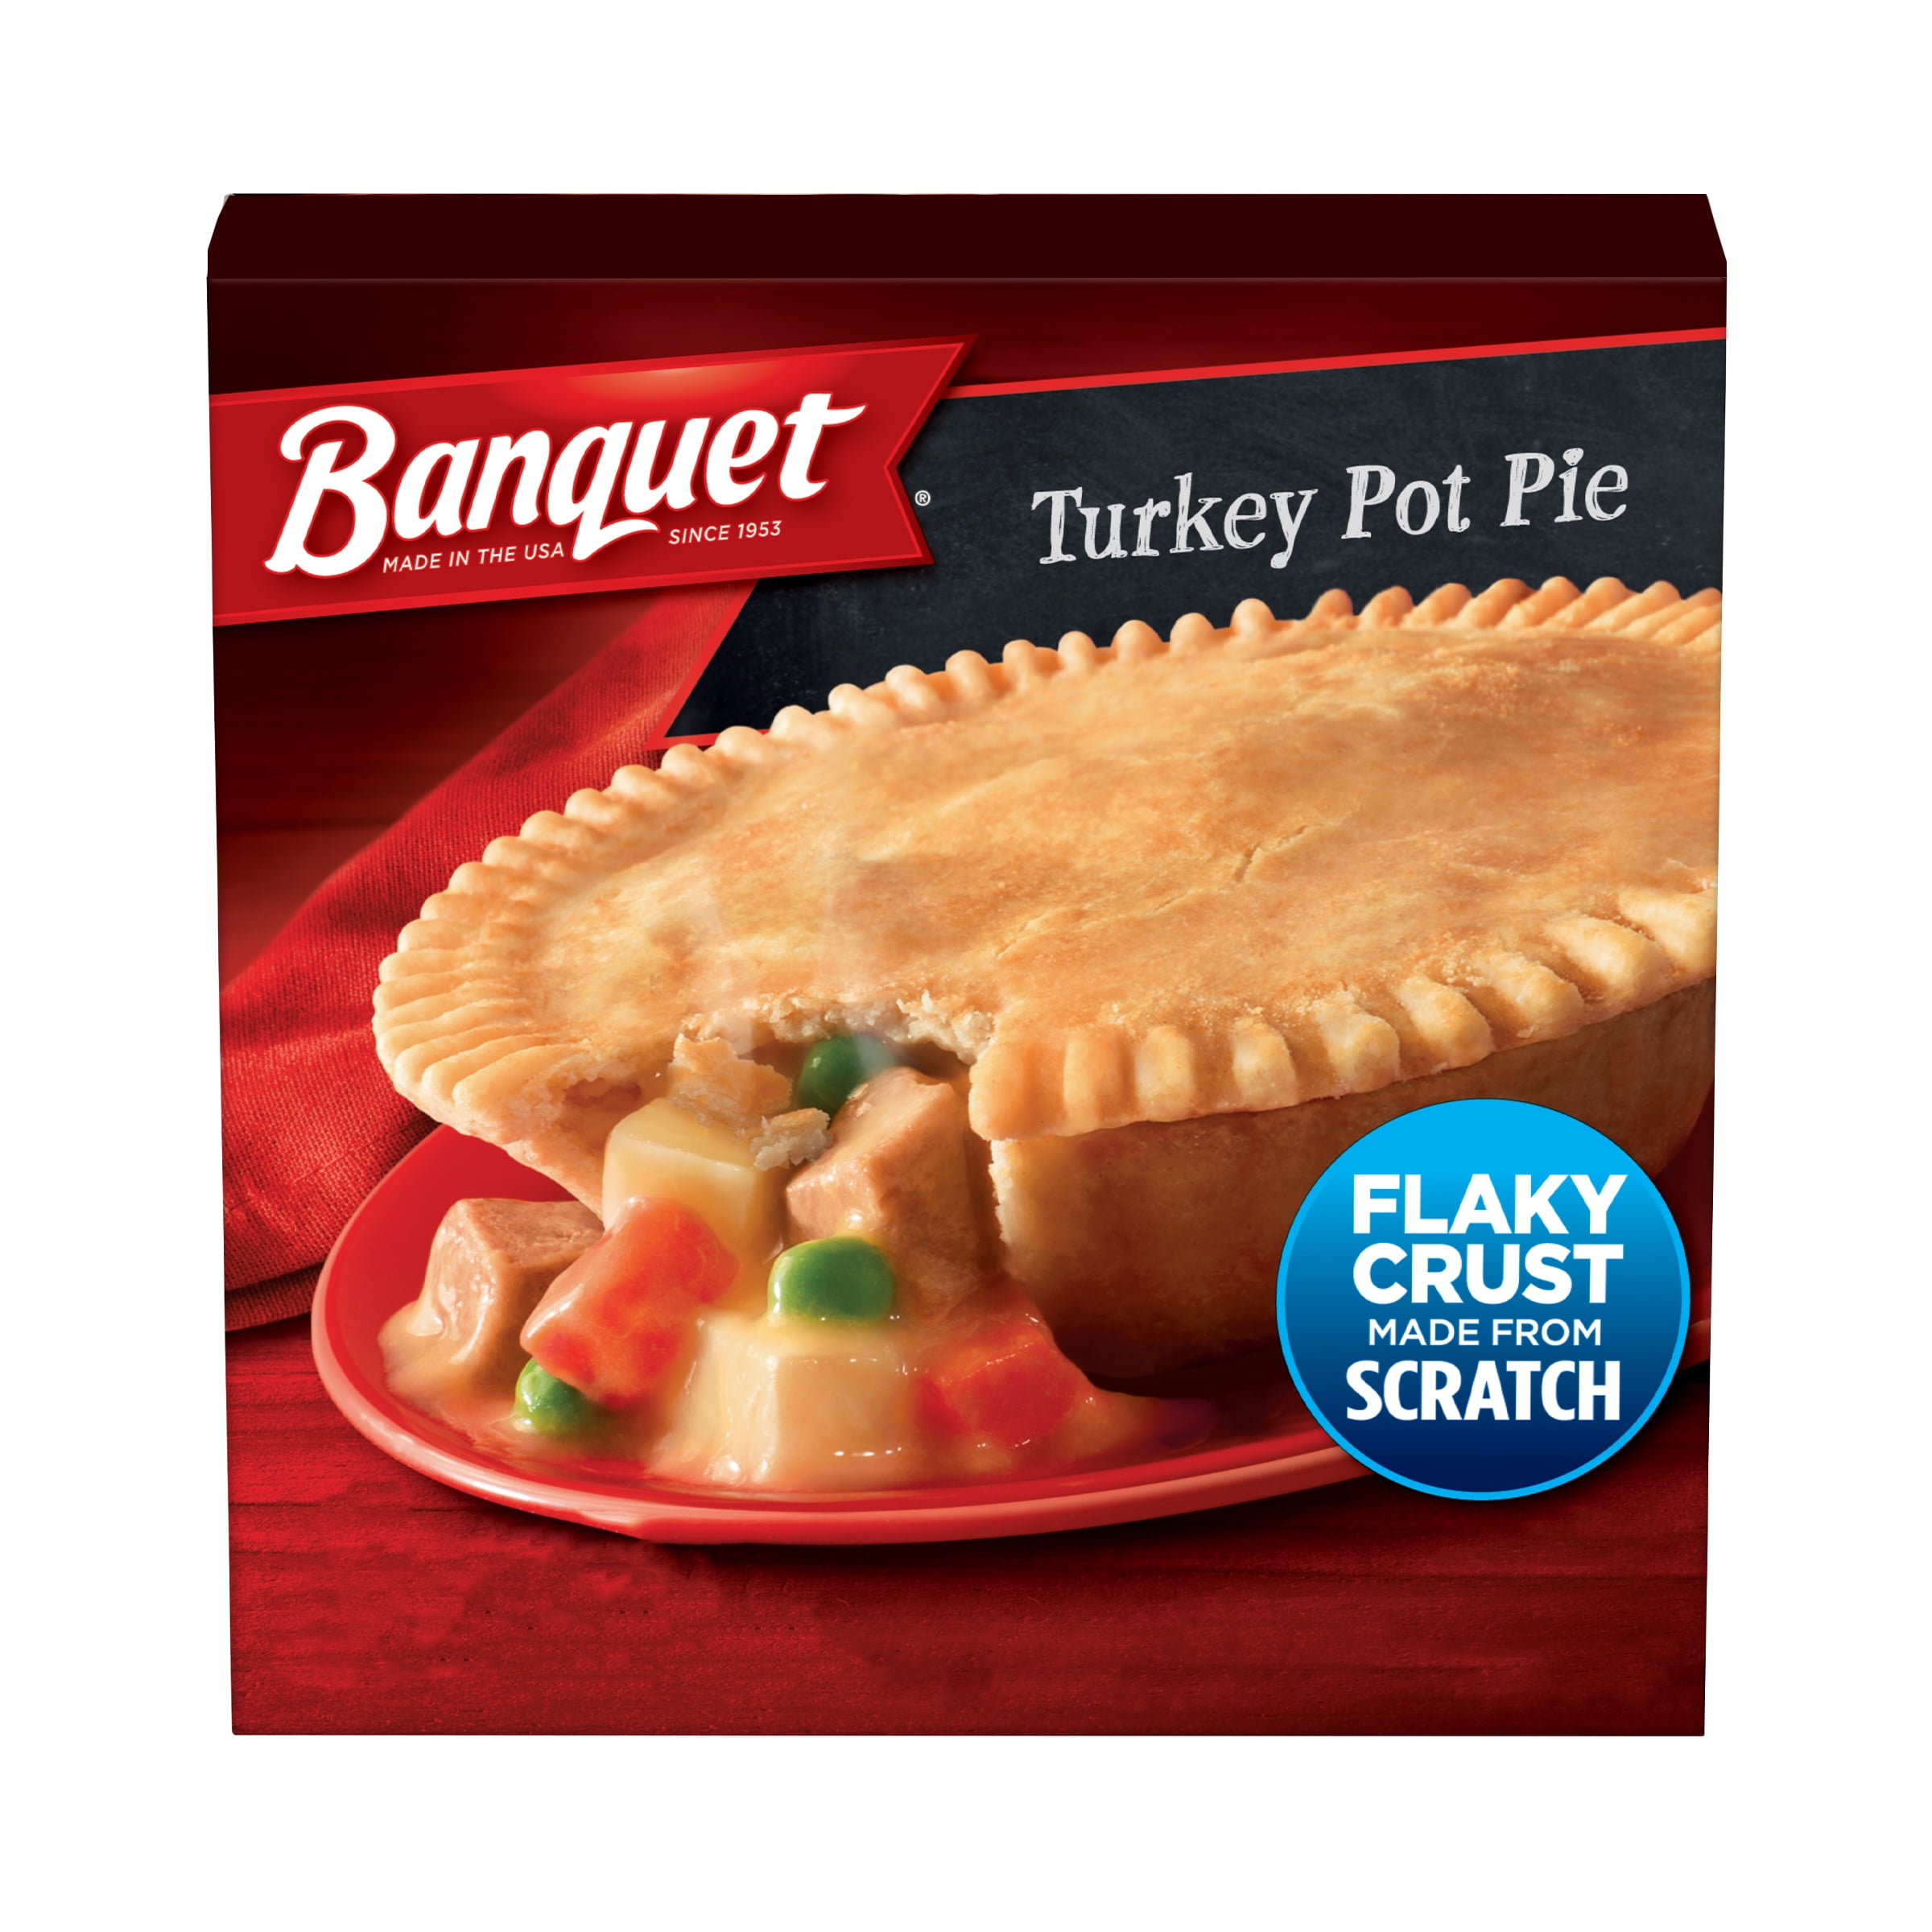 Banquet Turkey Pot Pie Frozen Meal, 7 oz (Frozen)